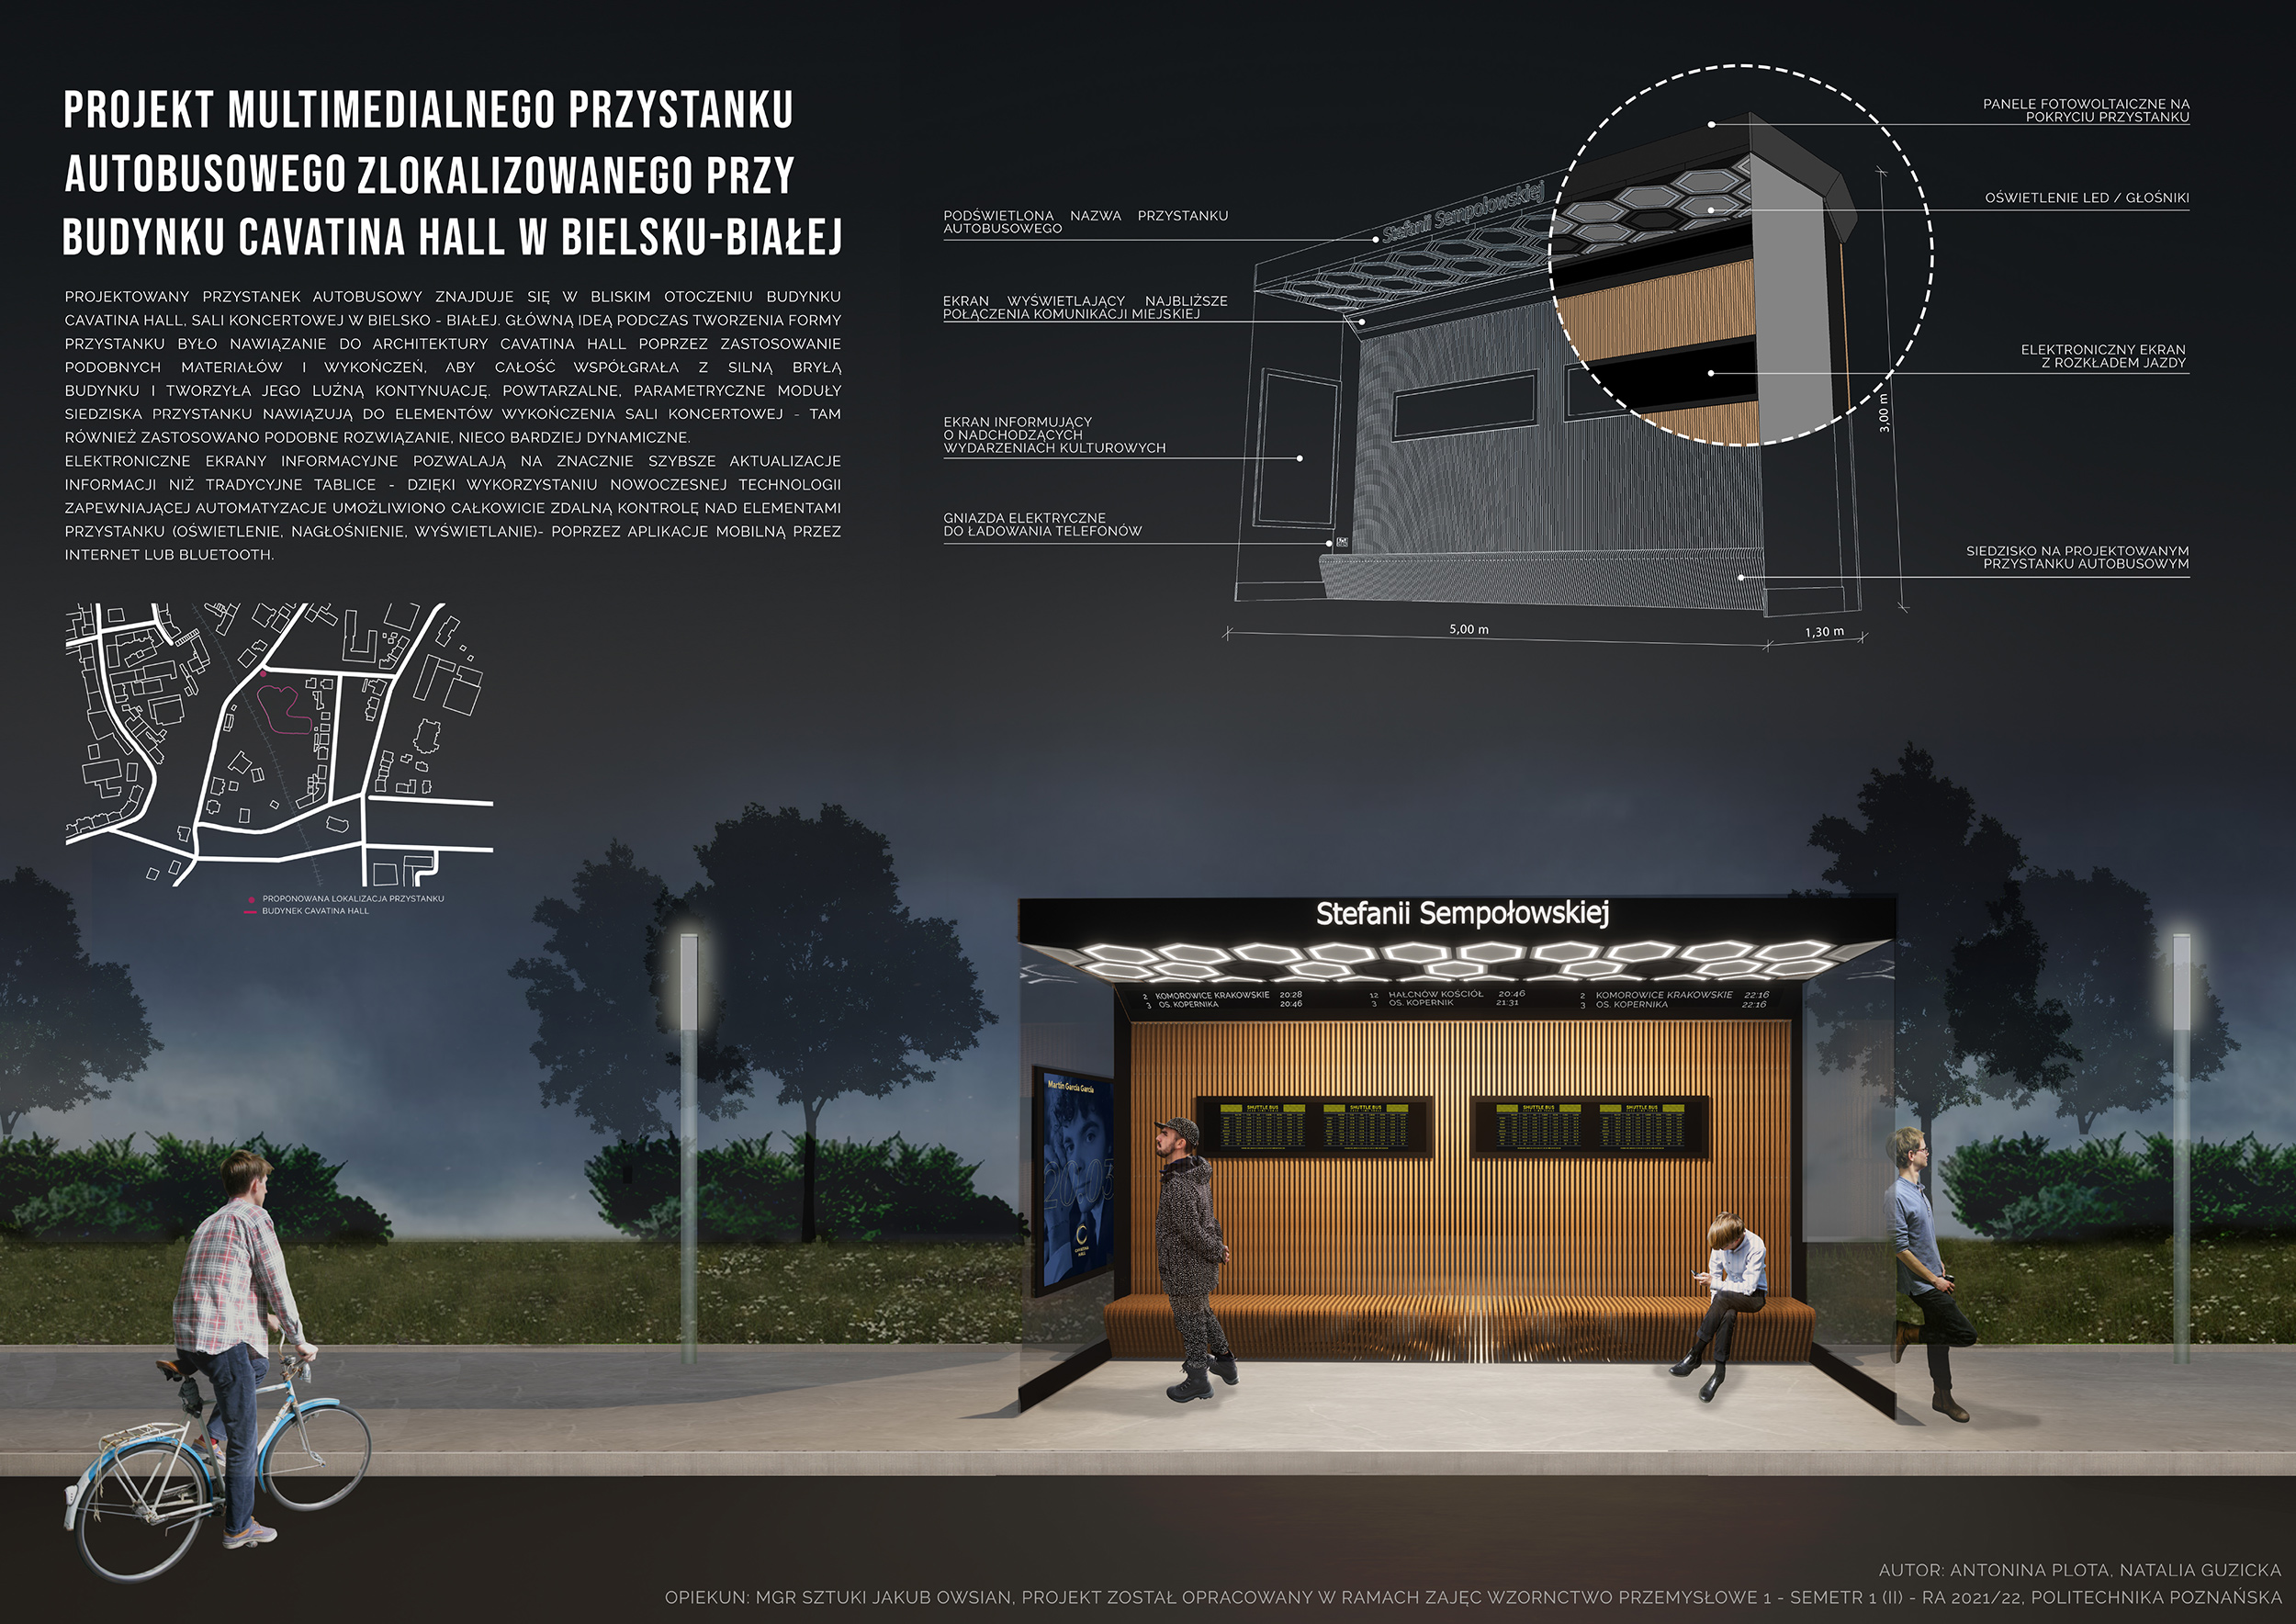 Projekt autobusowego przystanku multimedialnego cavatina Hall przy ulicy Stefanii Sempołowskiej w Bielsku-Białej